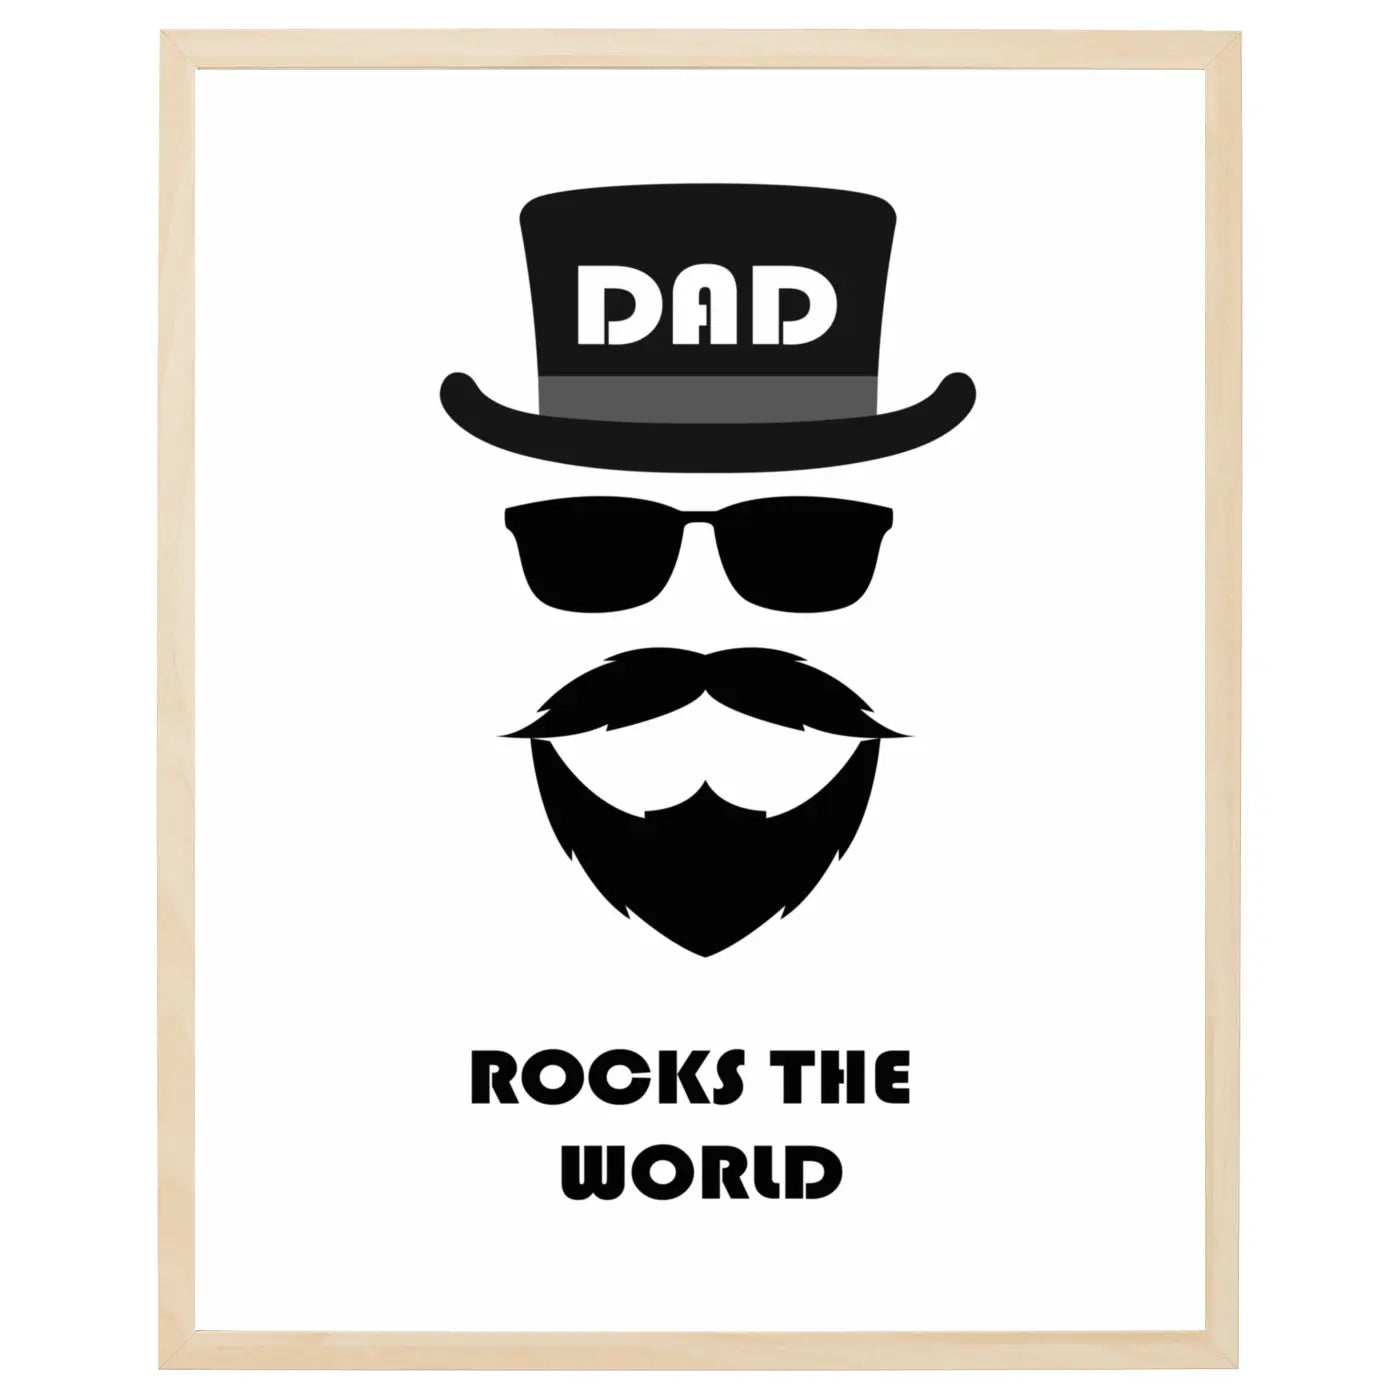 Far plakat Dad Rocks the World tekst med billede af et ansigt på en sej far i sort og hvid